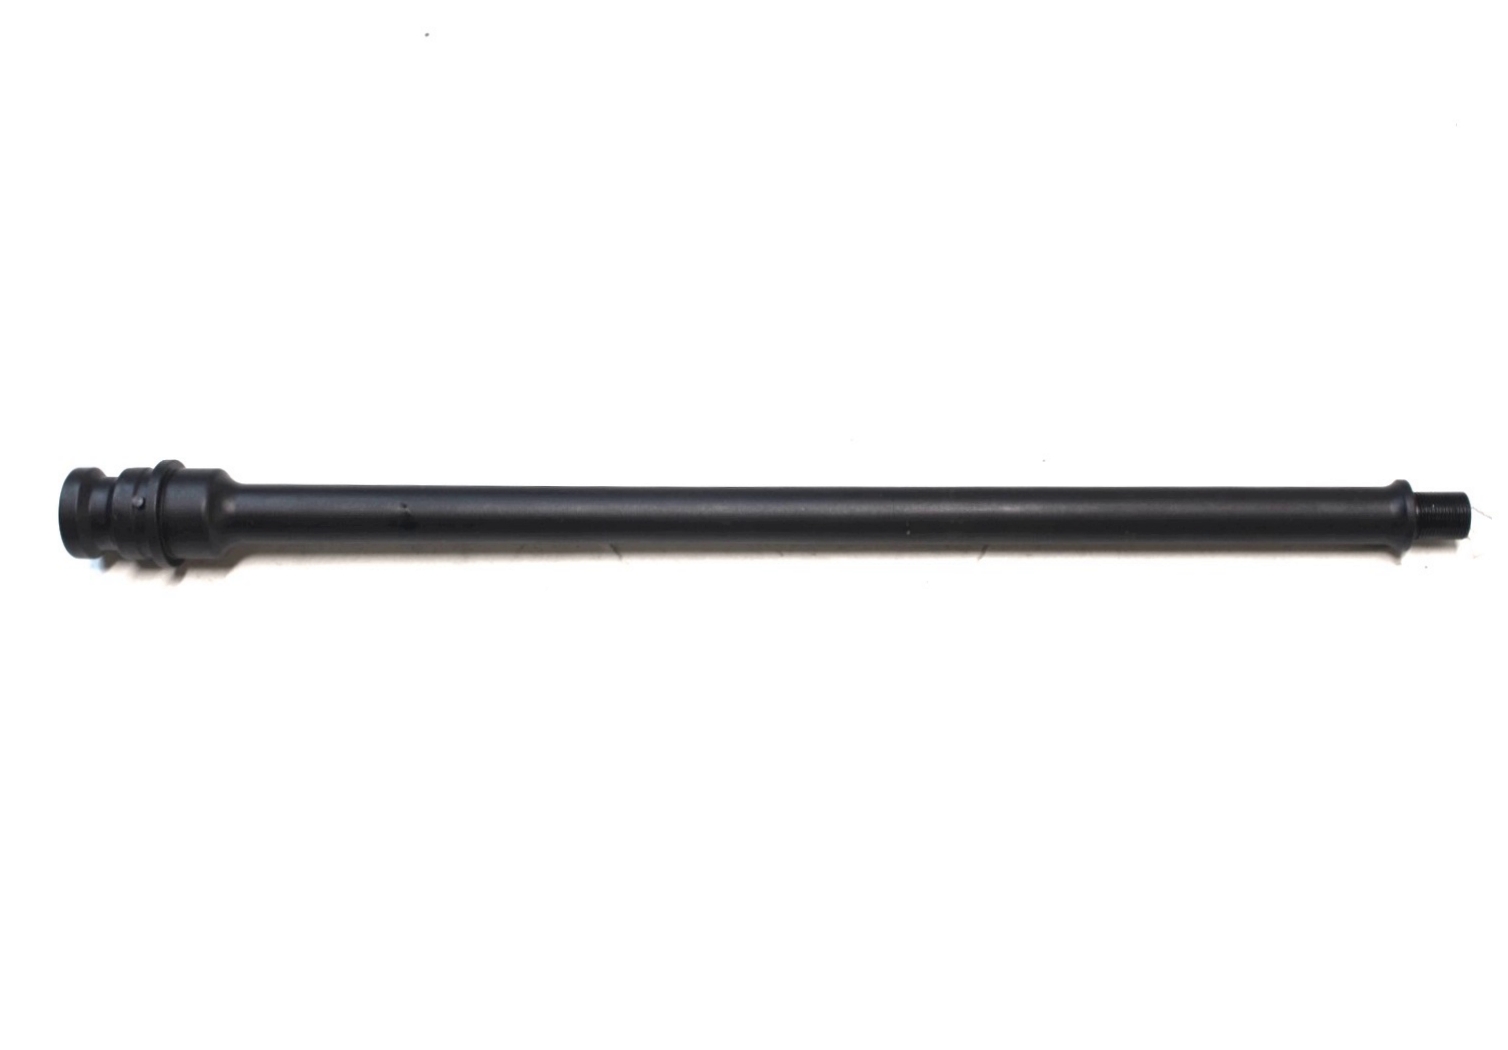 Alpha 14.5 inch 9mm PCC AR-15 Barrel